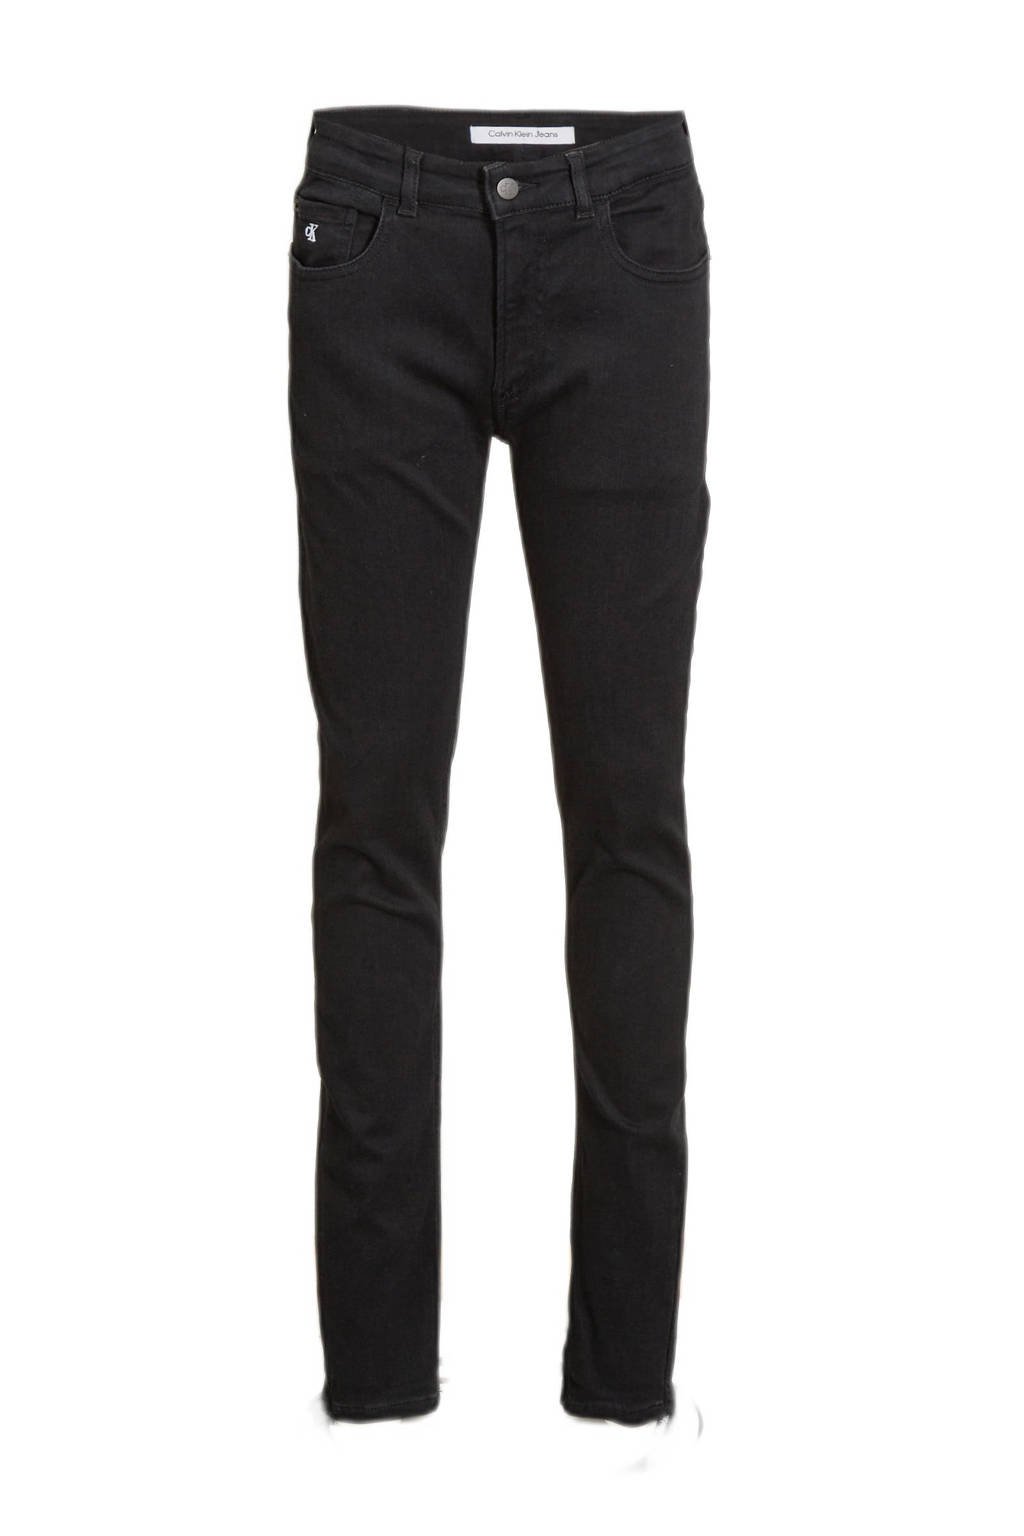 CALVIN KLEIN JEANS skinny jeans clean black, Clean black